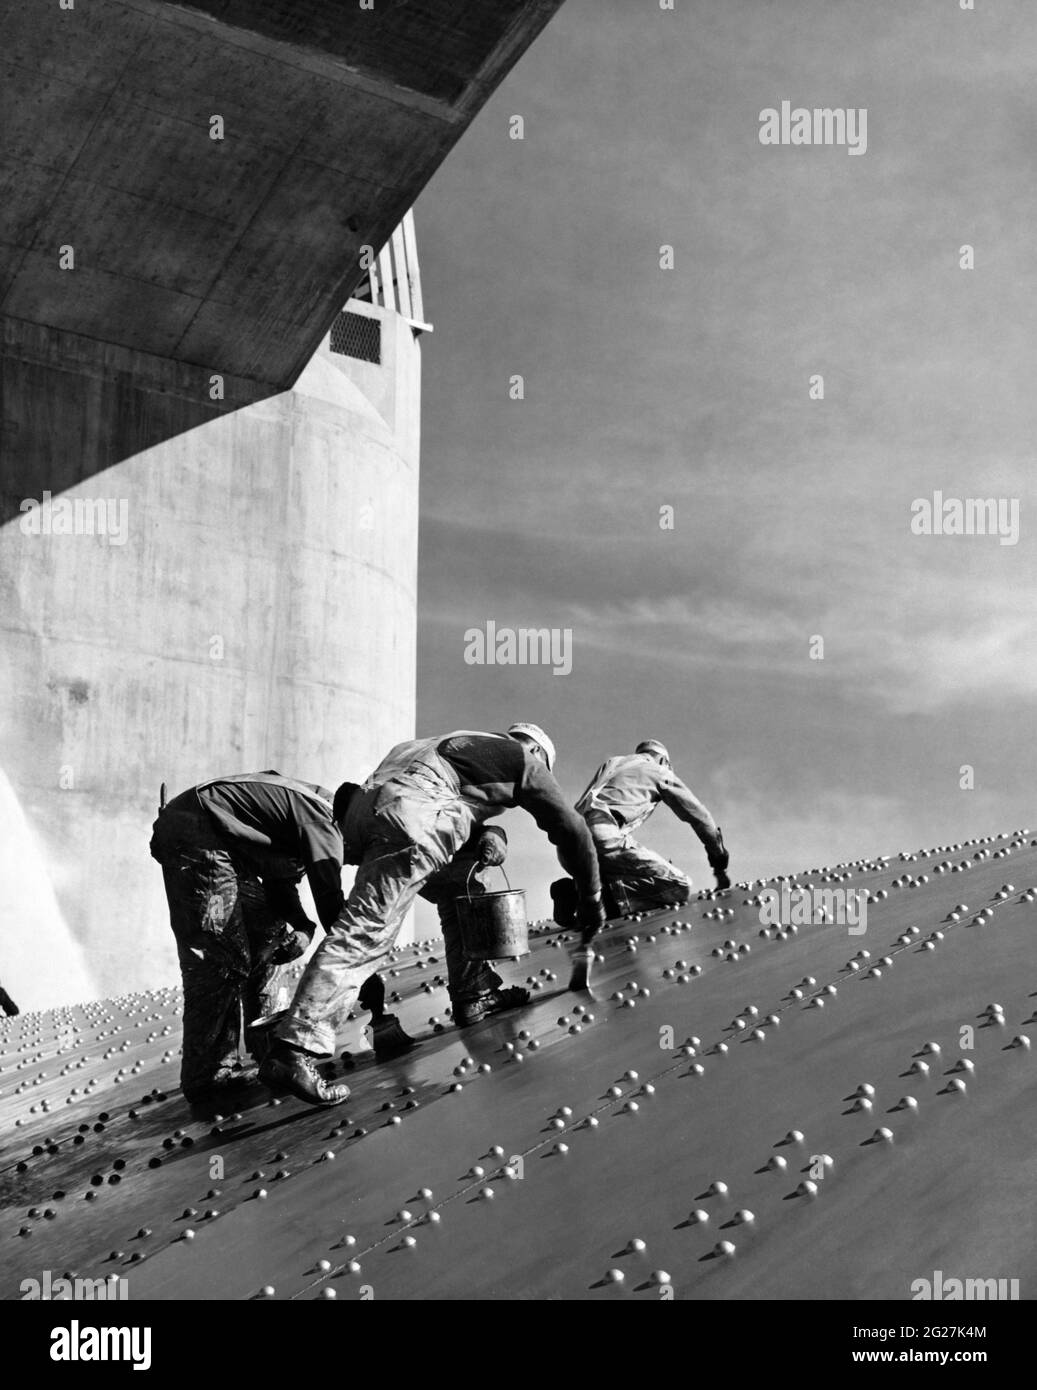 Trabajadores de la construcción que aplican una capa de pintura en placas de acero remachadas inclinadas de la presa Hoover. Foto de stock